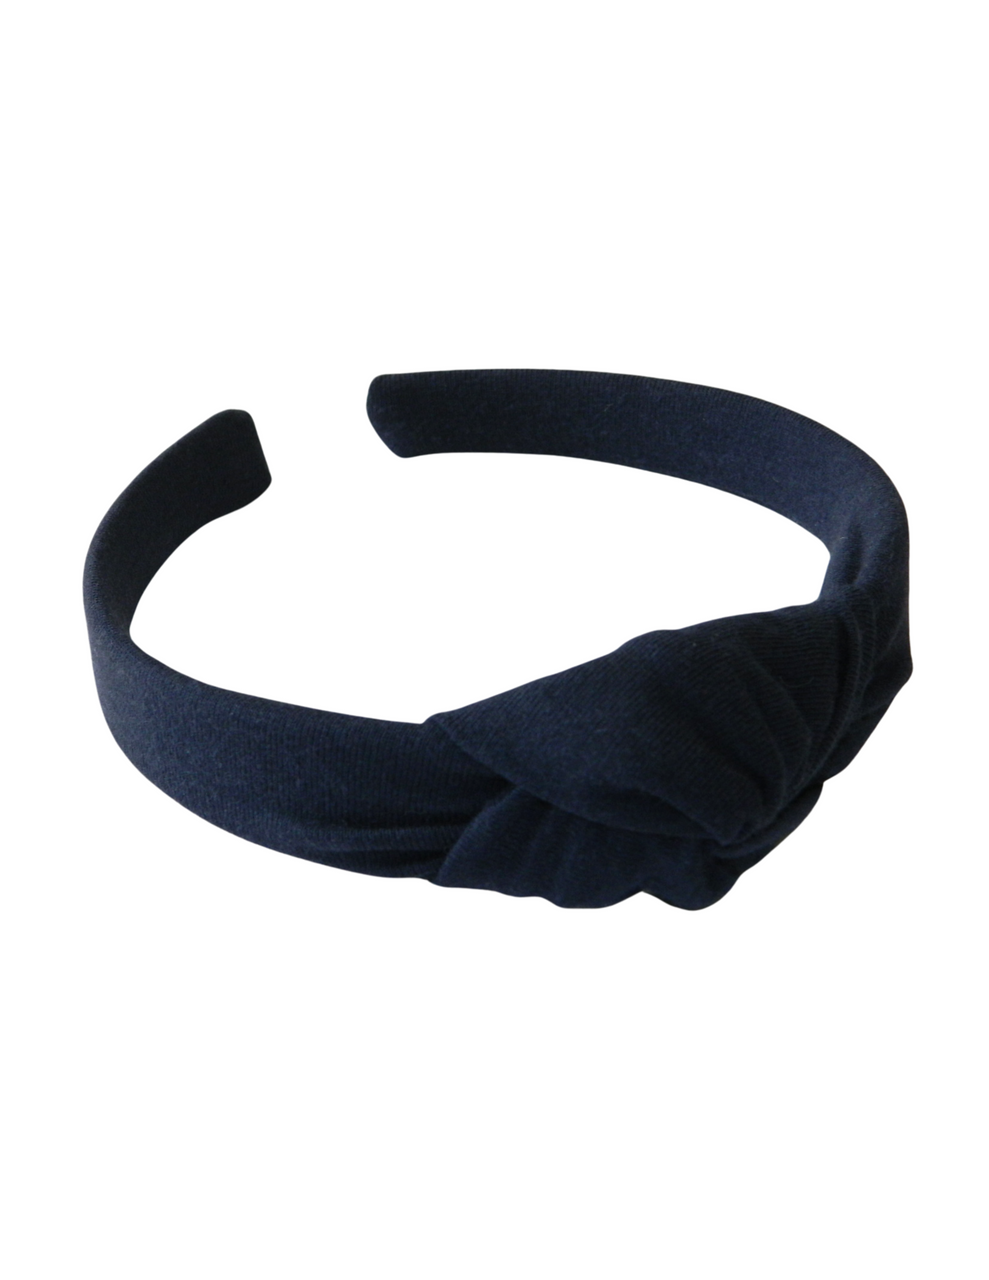 Navy Top Knot Headband